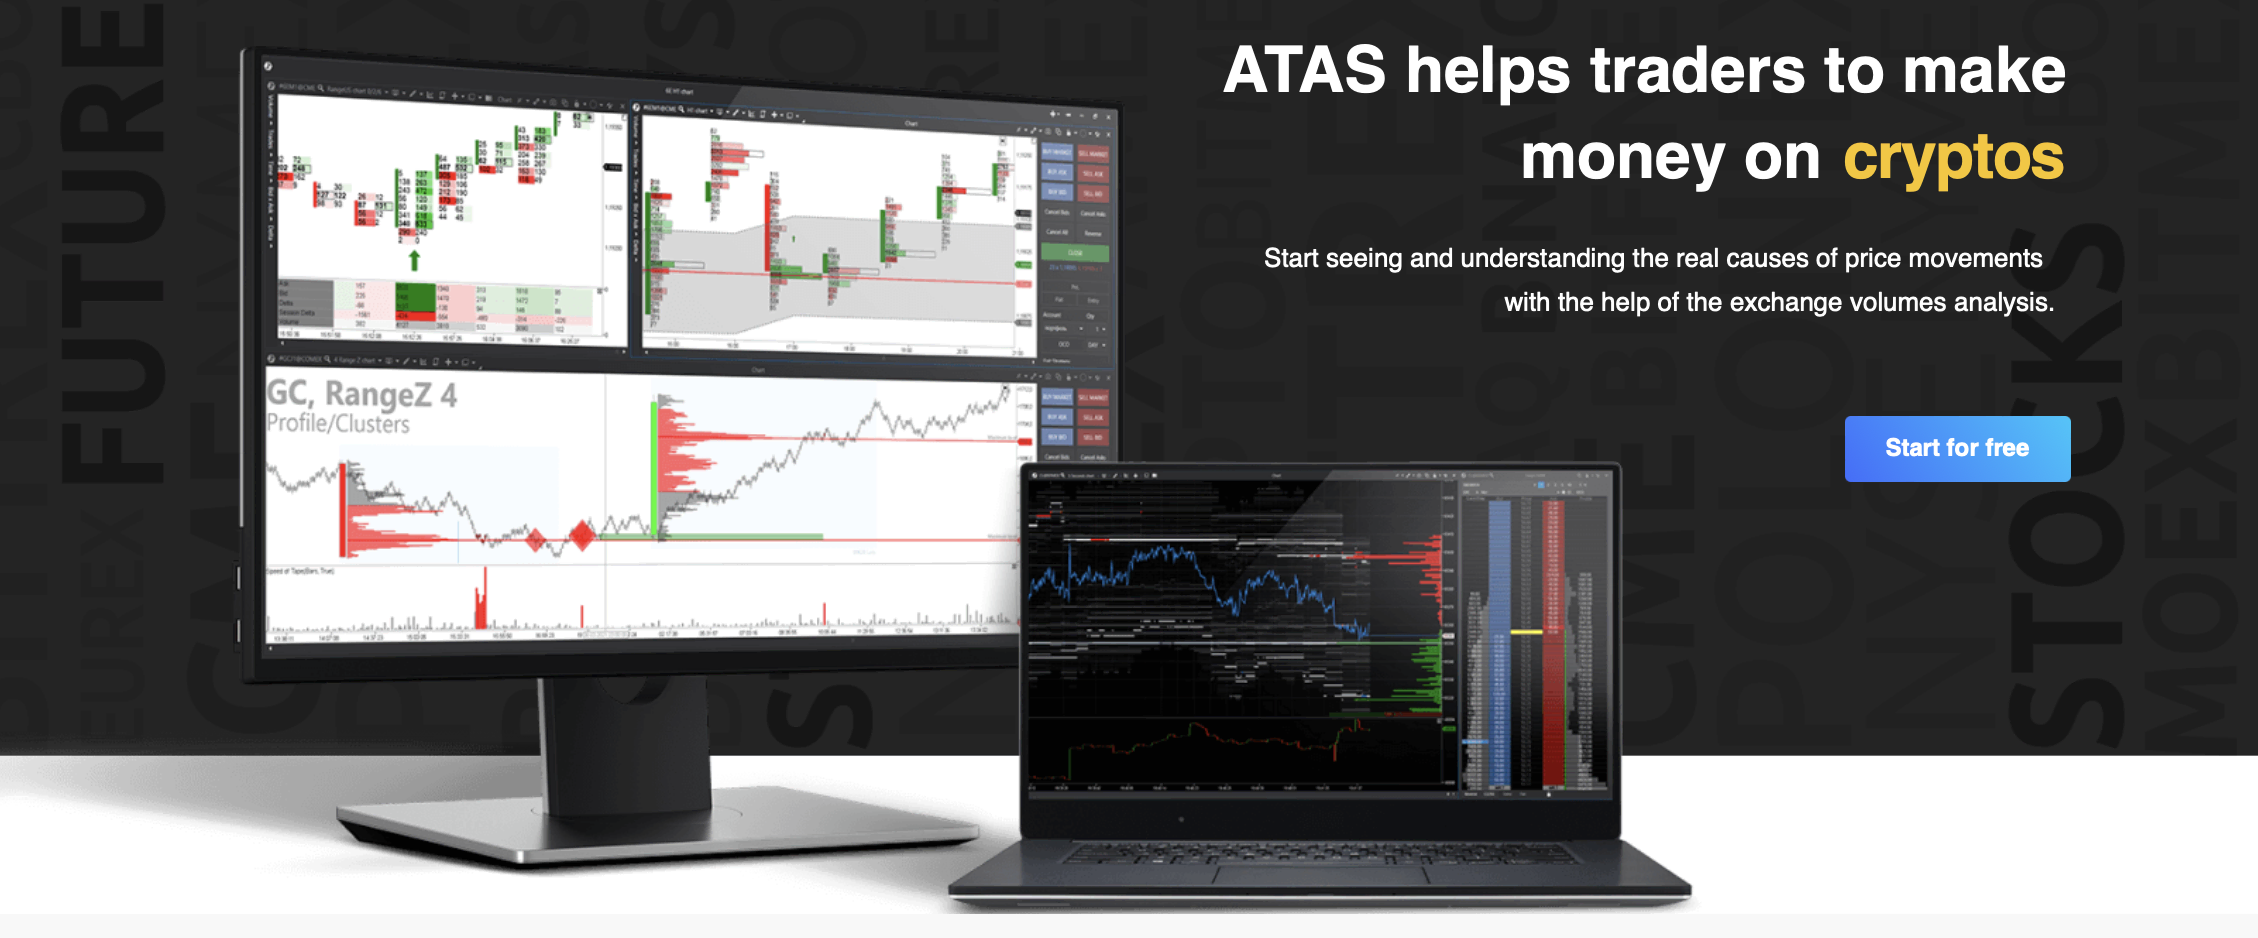 ATAS-kaupankäyntialustan virallinen verkkosivusto